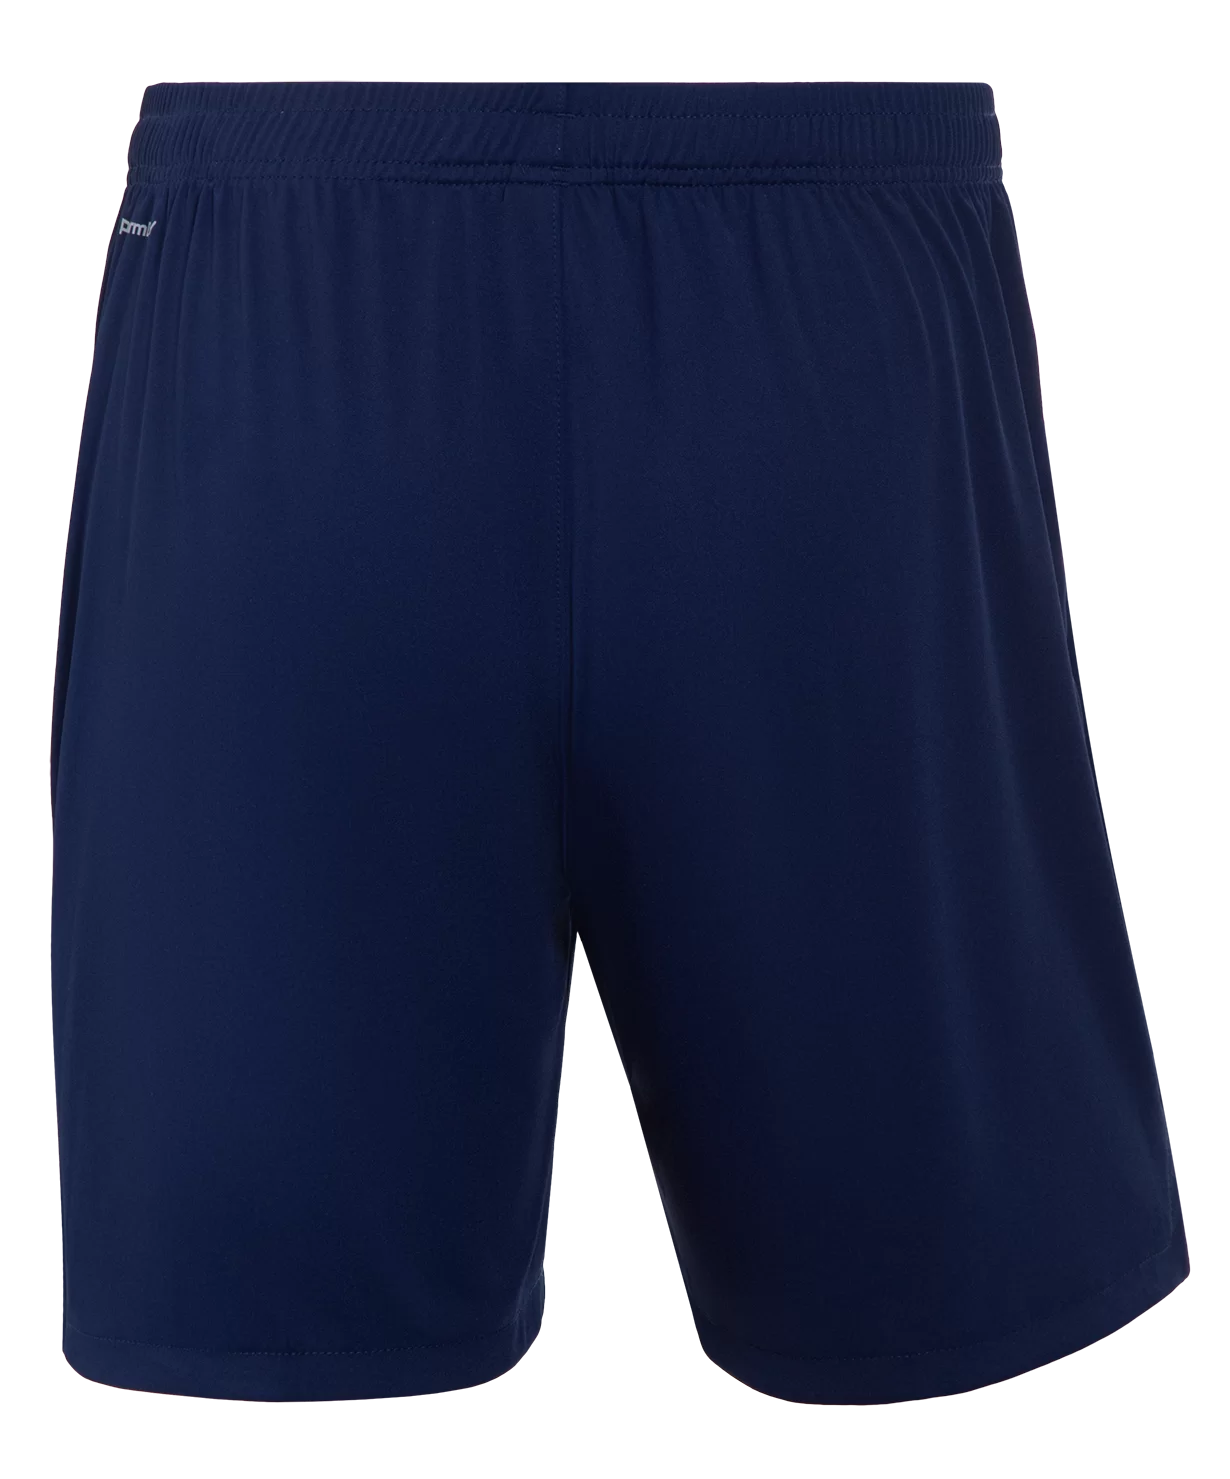 Фото Шорты игровые NATIONAL PerFormDRY Away Shorts, синий со склада магазина СпортСЕ